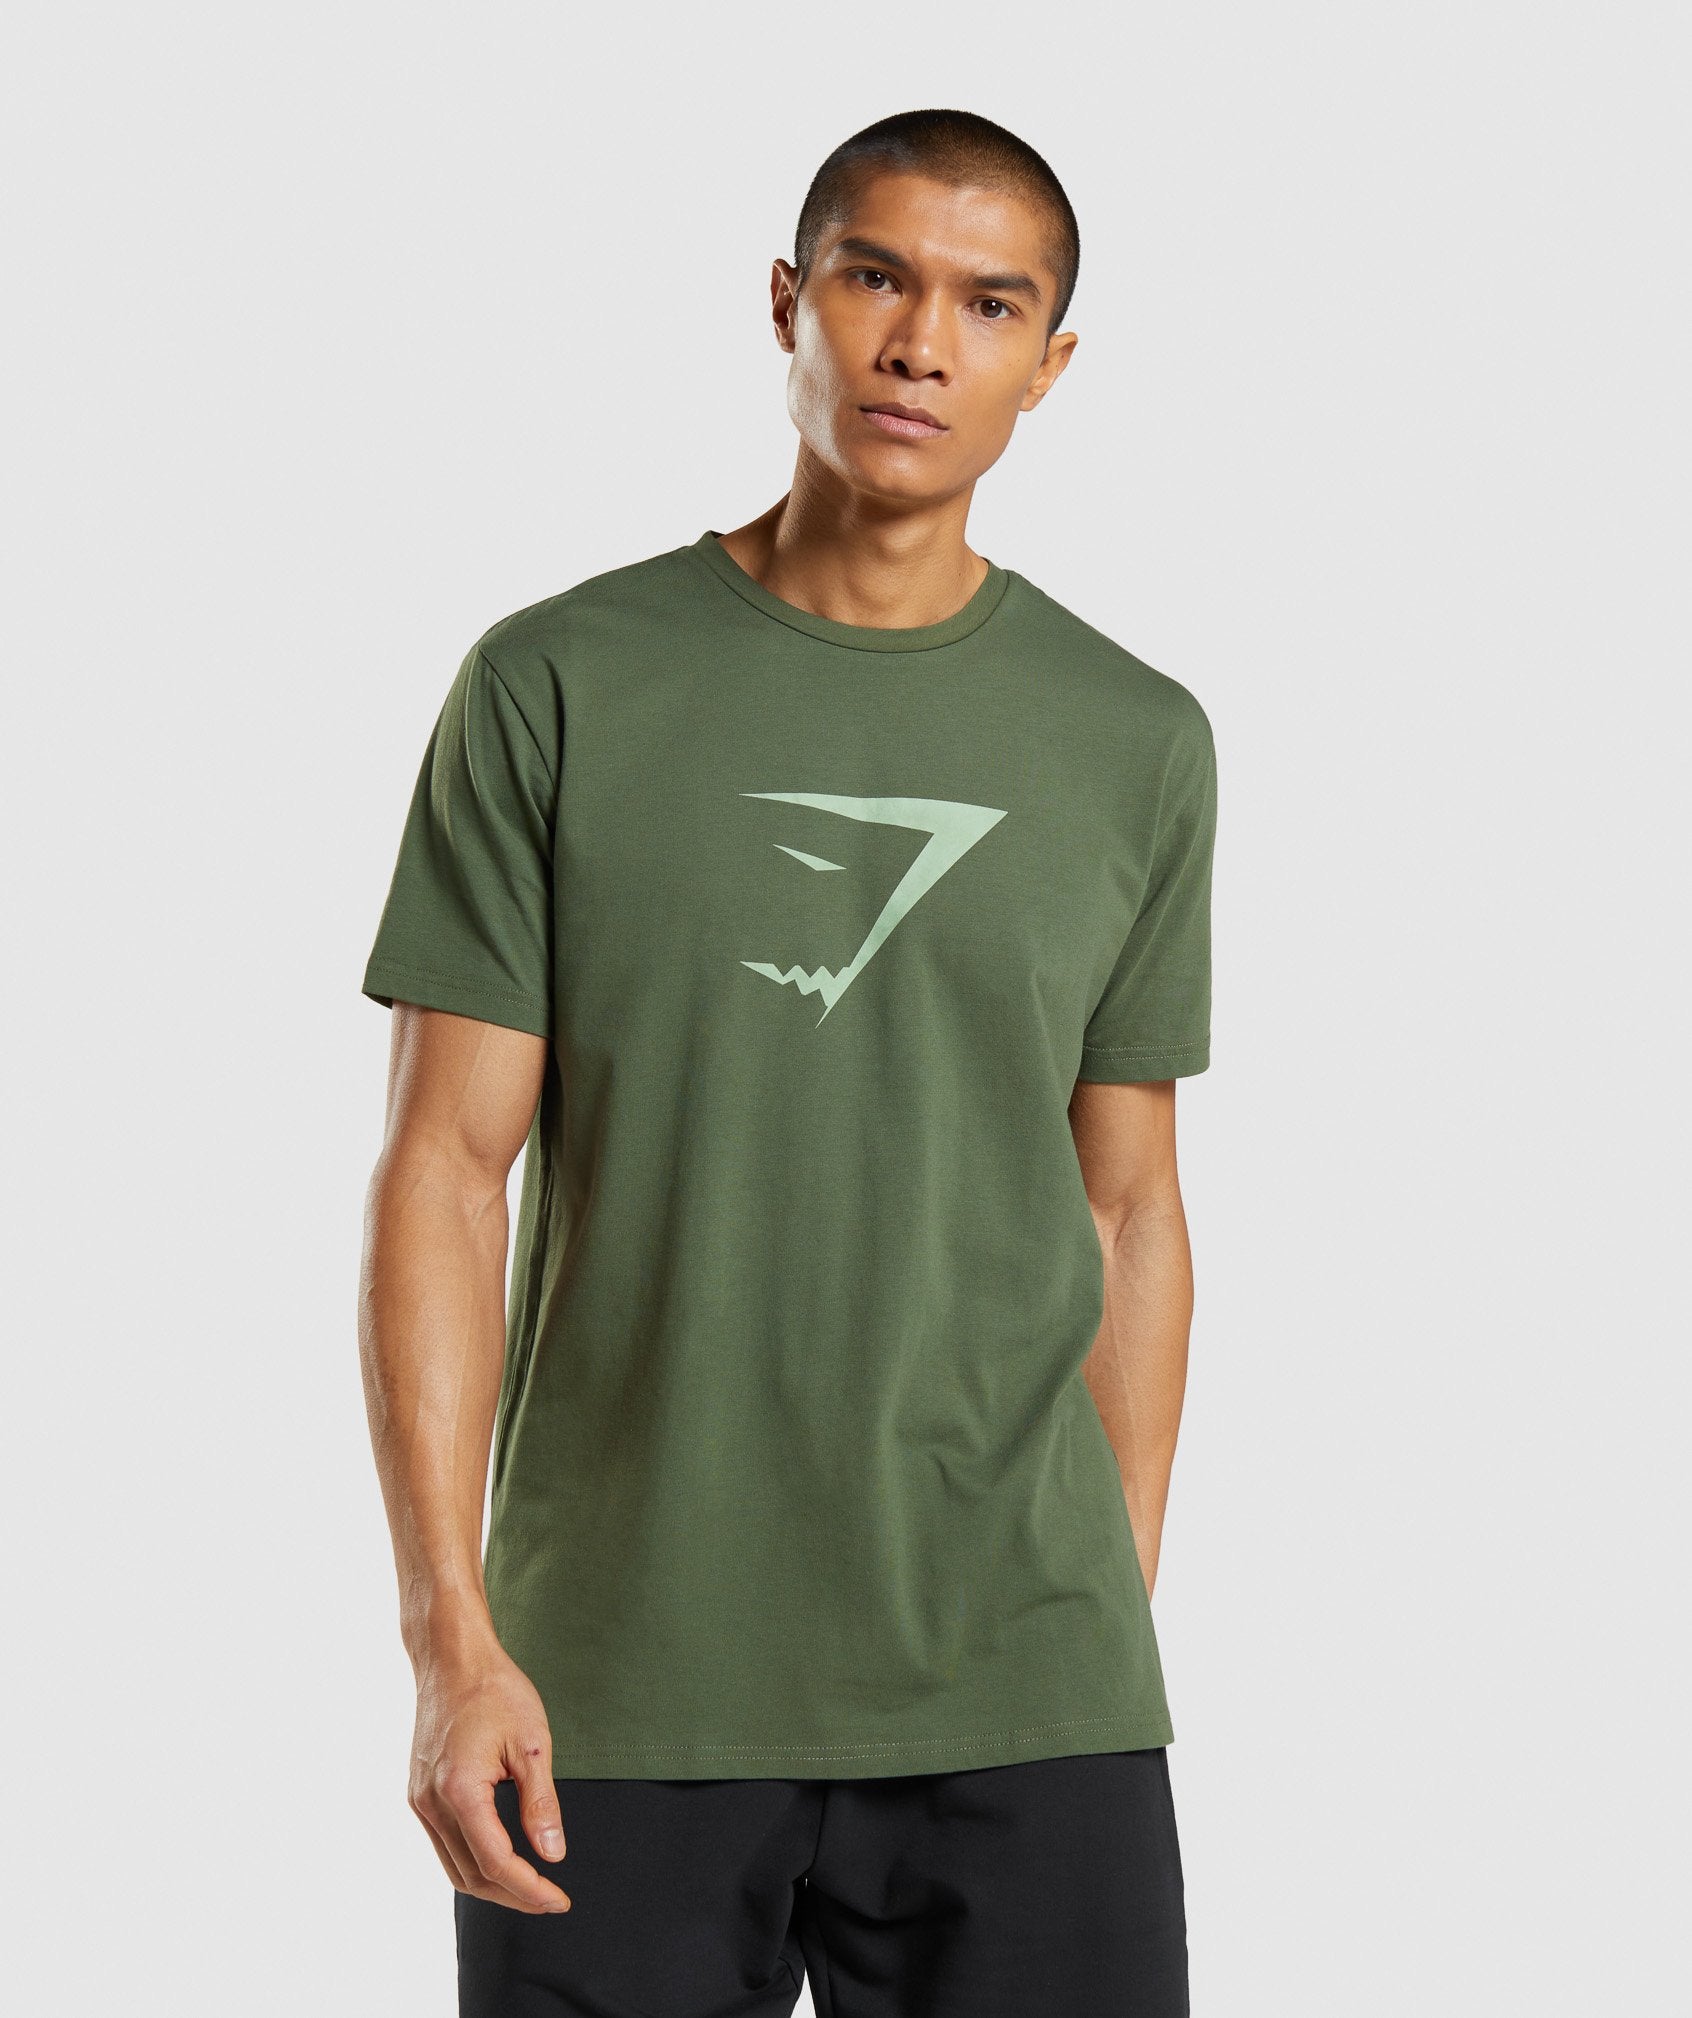 Sharkhead Infill T-Shirt in Green - view 1